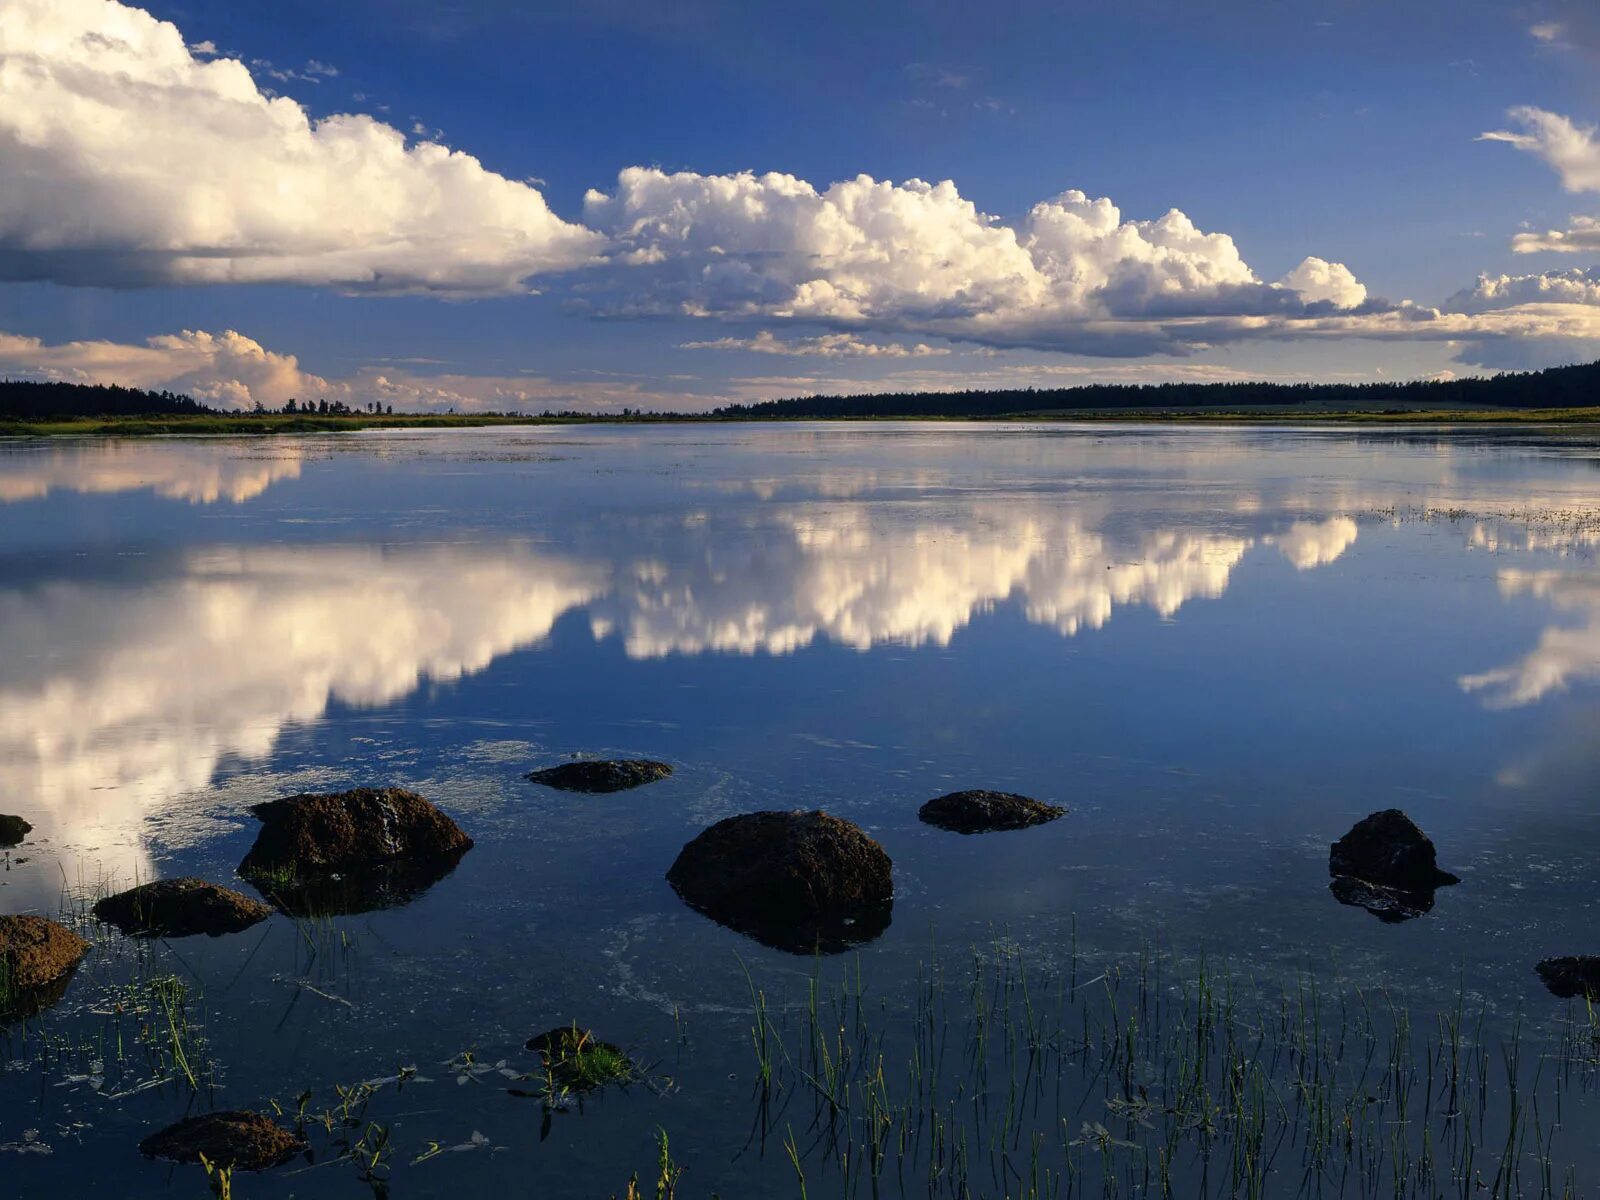 В течени реки спокойном величавом отражалось небо. Озеро Убинское. Озеро Убинское Новосибирская область. Озеро Малое Убинское. Озеро Сюрзи Архангельская область.